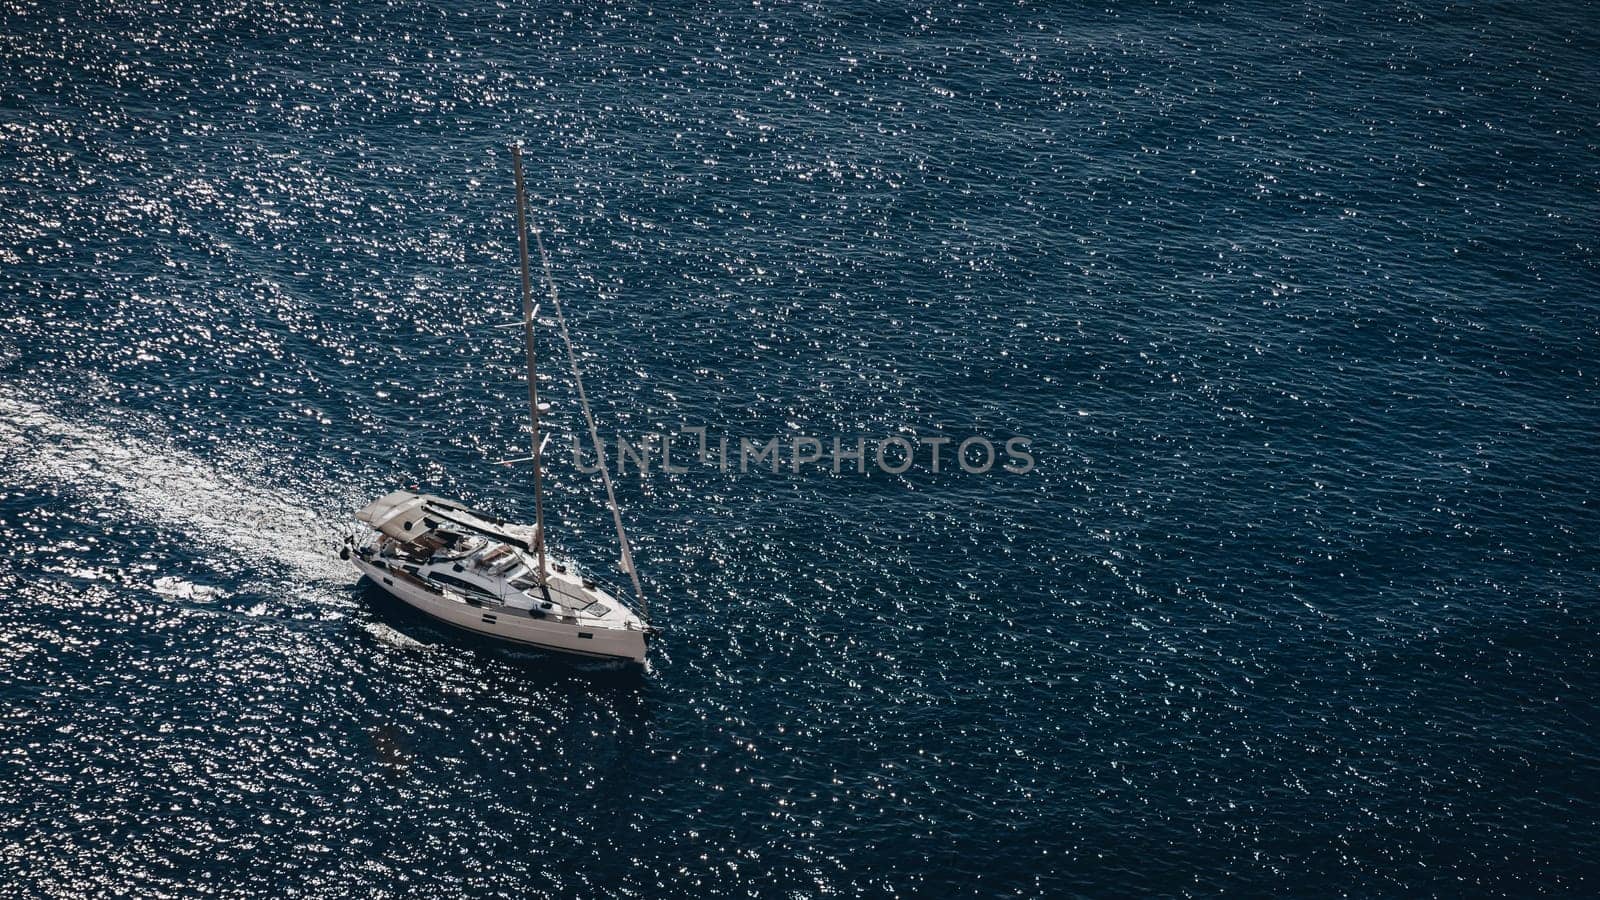 Aerial view of luxury floating ship in blue waters of Adriatic Sea, Croatia